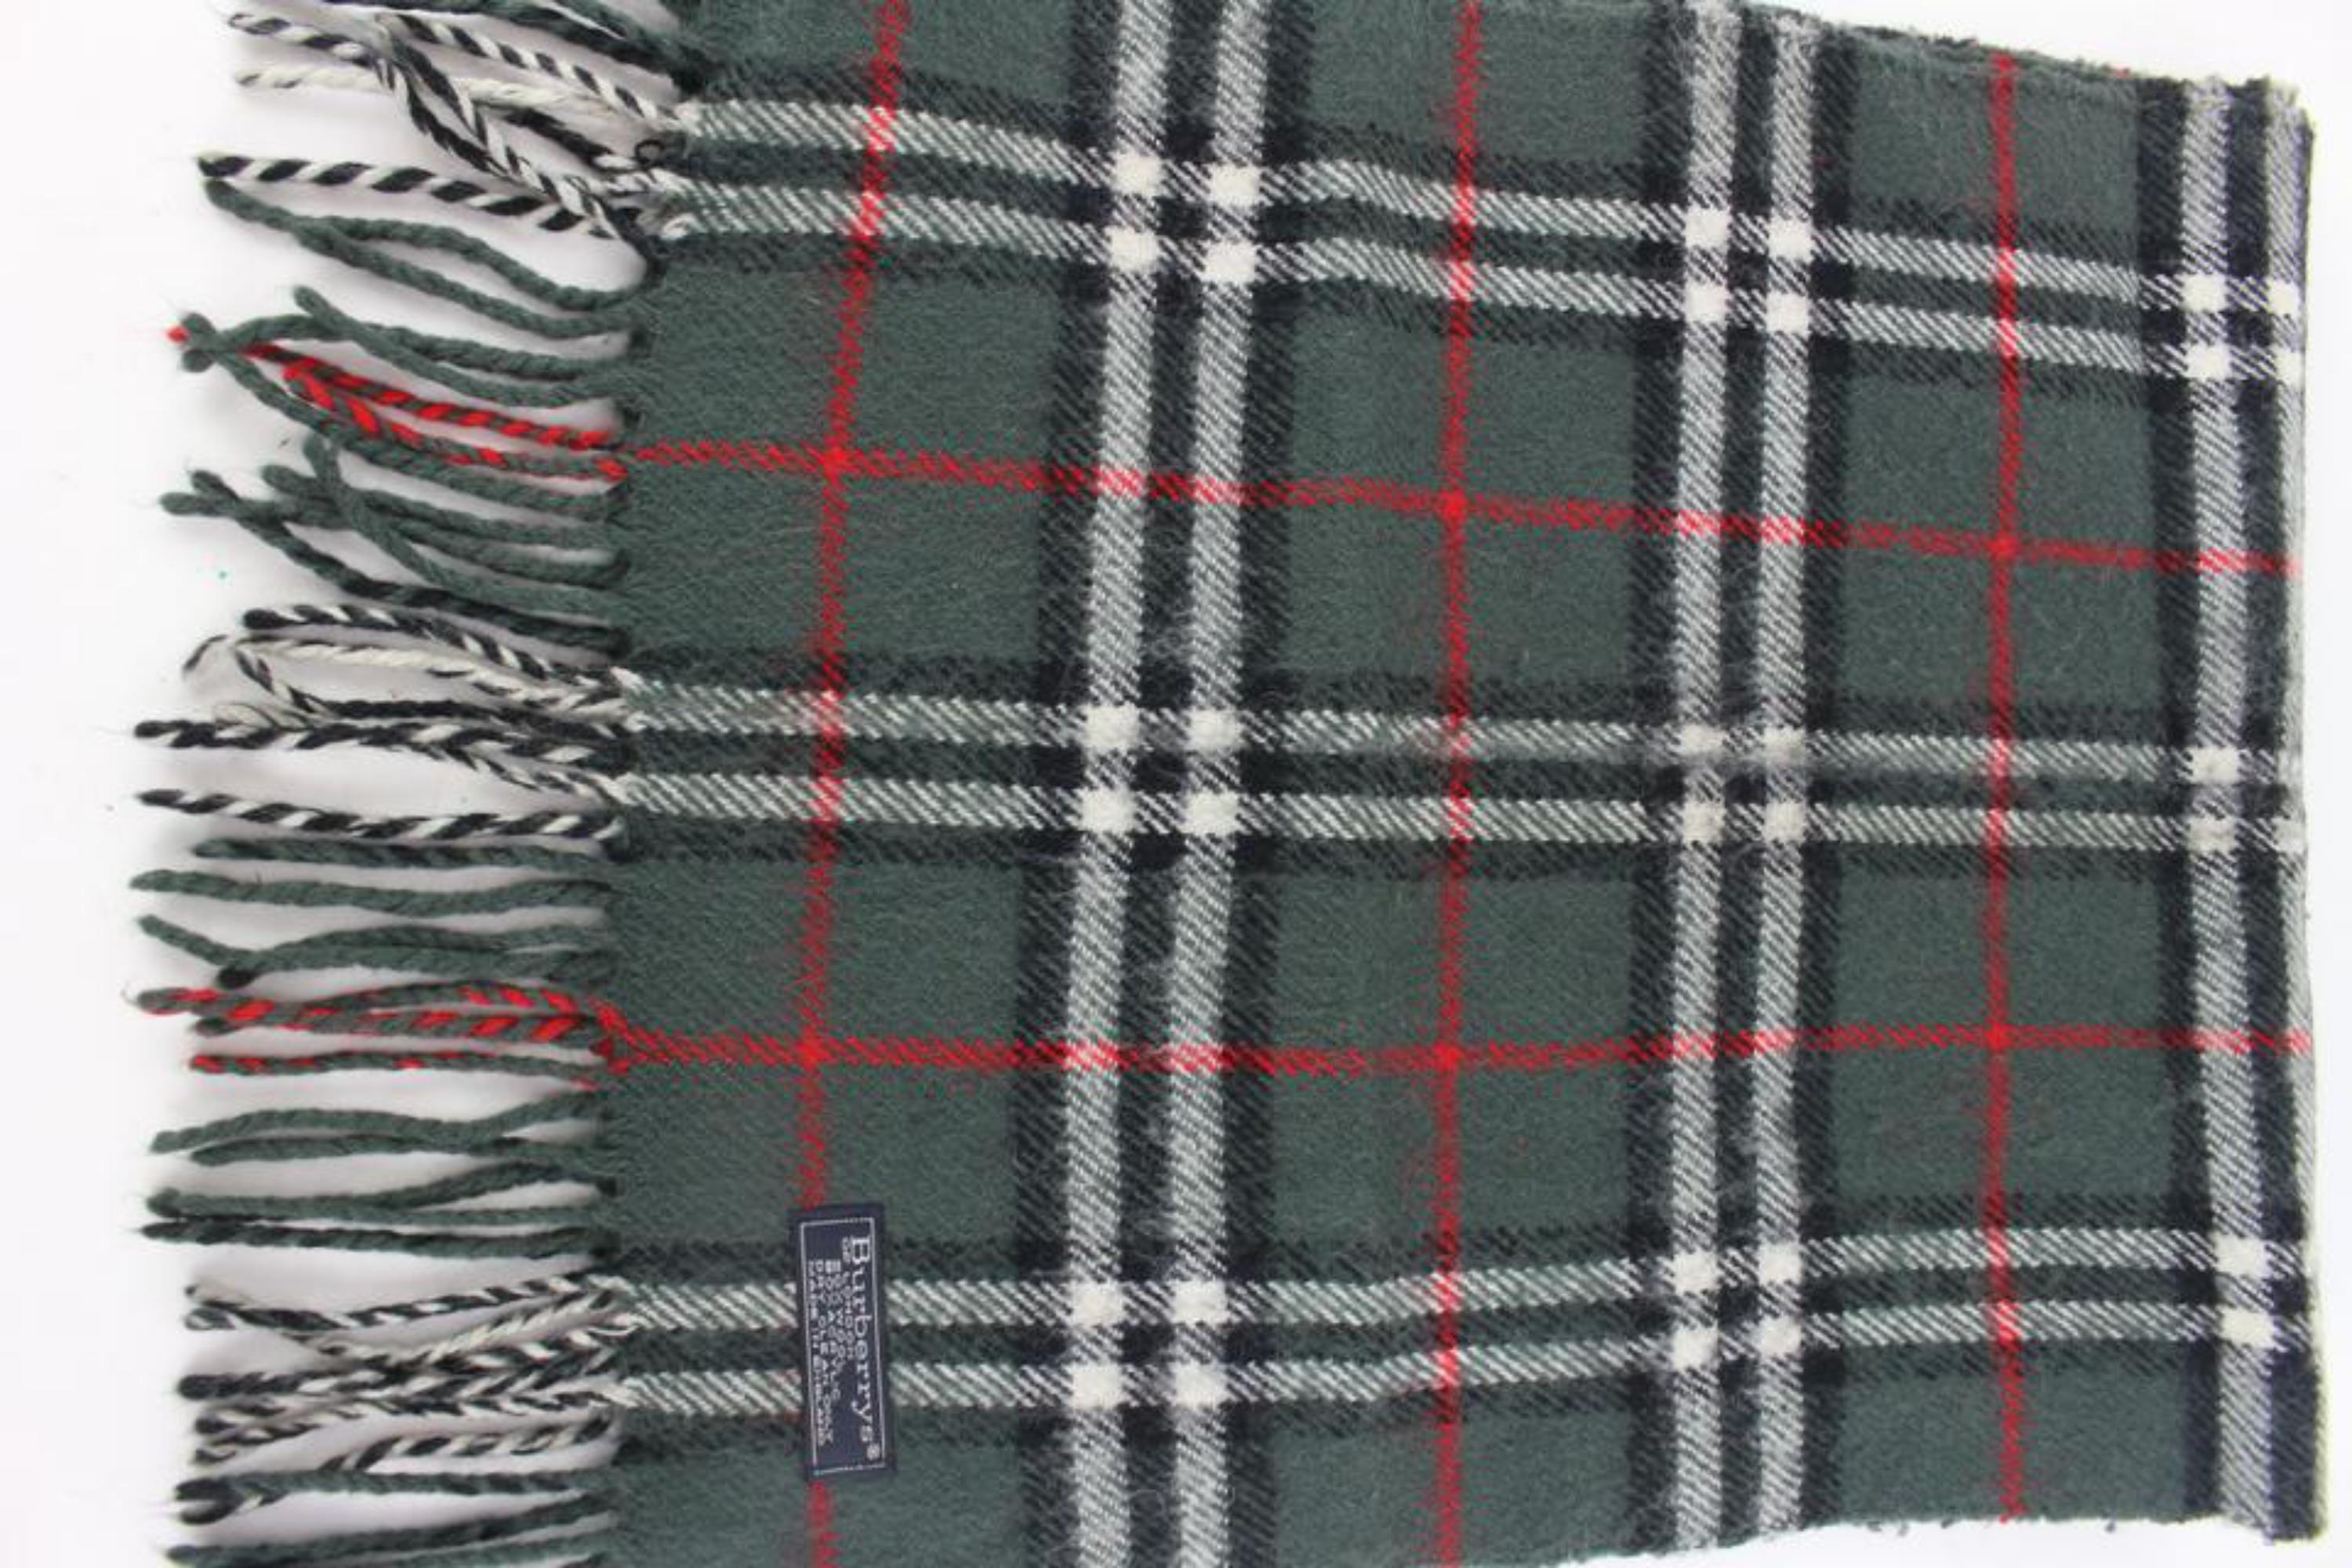 Burberry Ultra Rare écharpe en laine classique à carreaux Nova vert olive anthracite 1223b1 5